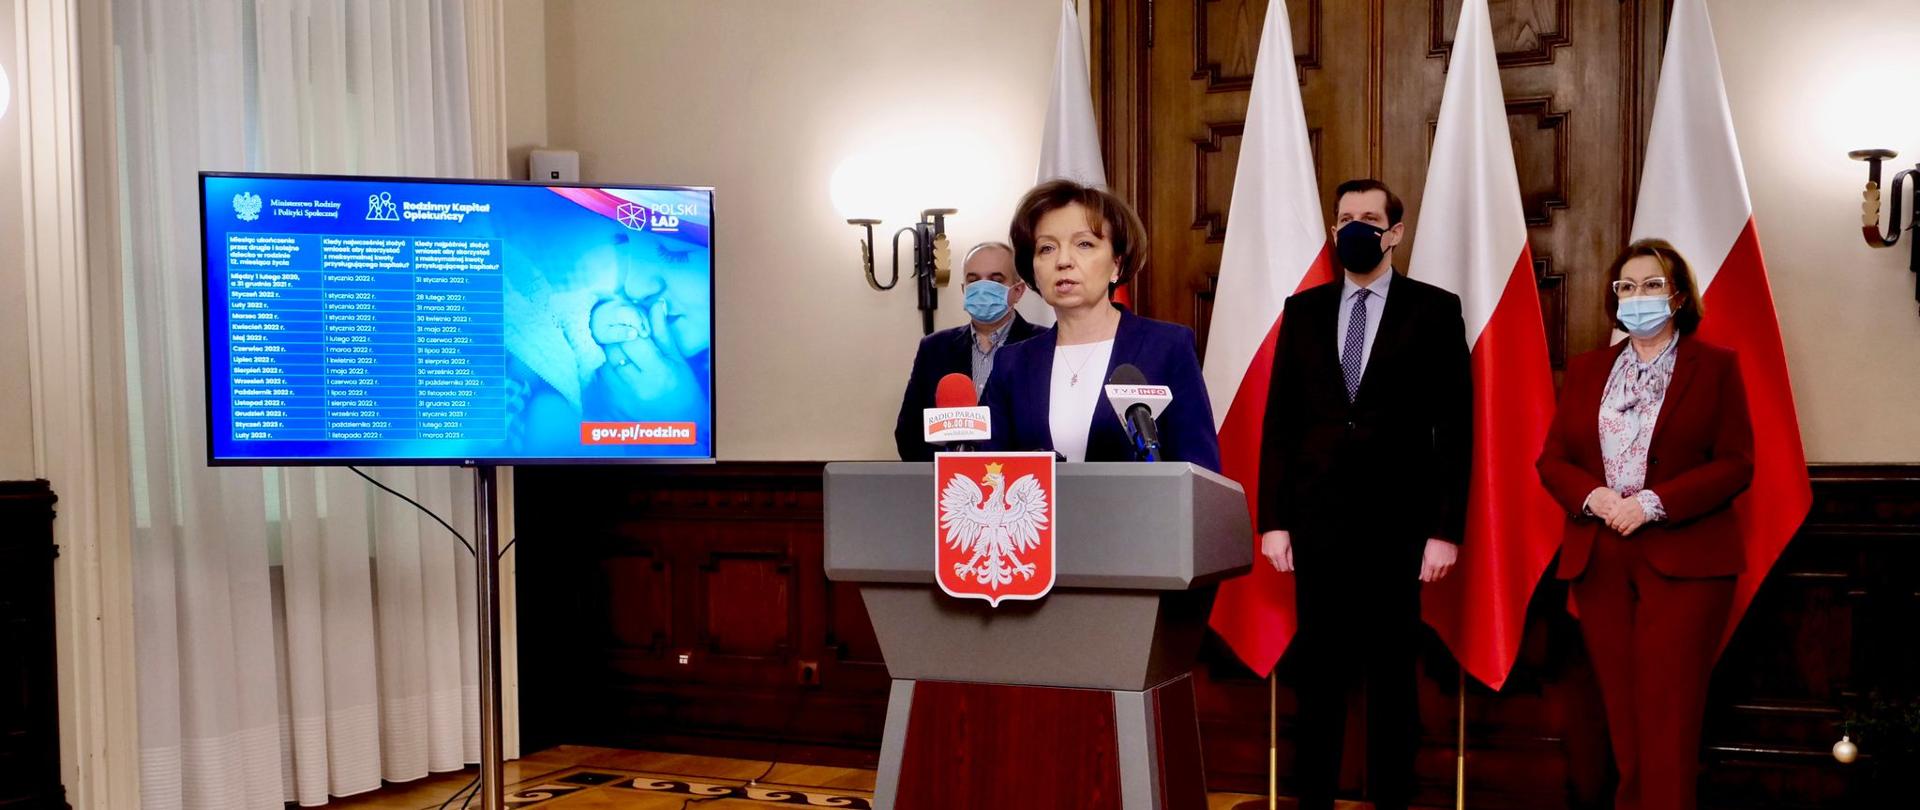 W centralnym punkcie przy mównicy z godłem Polski przemawia minister Maląg. W tle stoją trzy osoby. Za ich plecami widoczne trzy stojące biało-czerwone flagi.